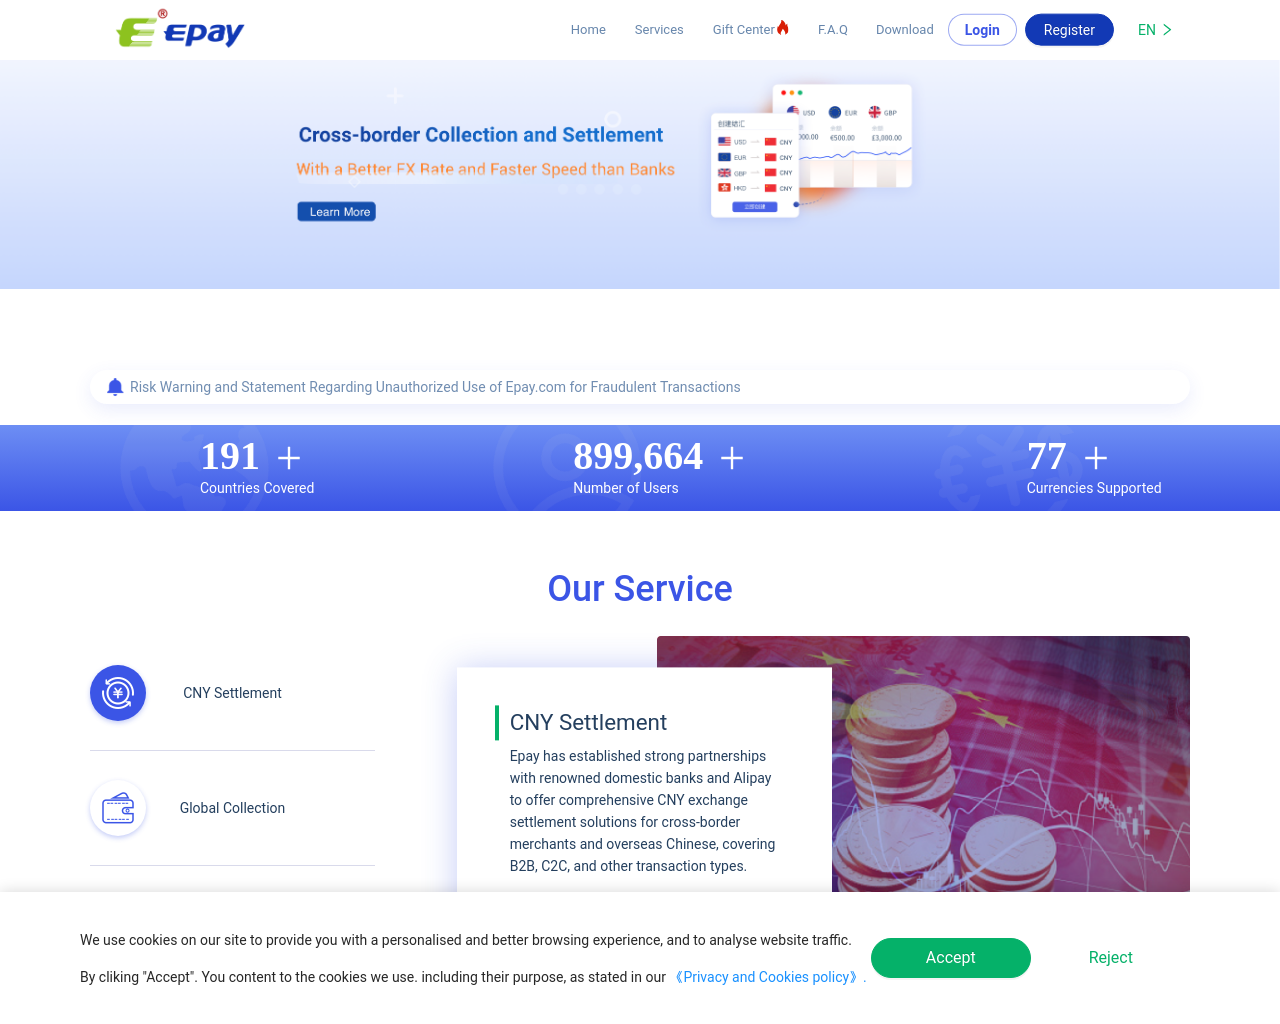 epay.com